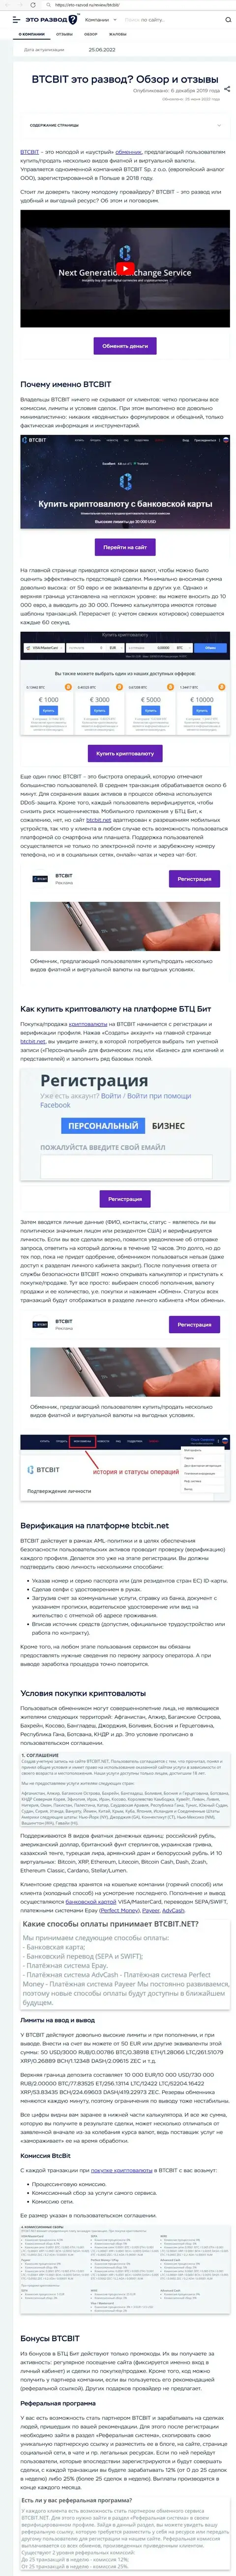 Обзор и условия для работы обменника BTCBIT Sp. z.o.o в публикации на ресурсе Eto Razvod Ru